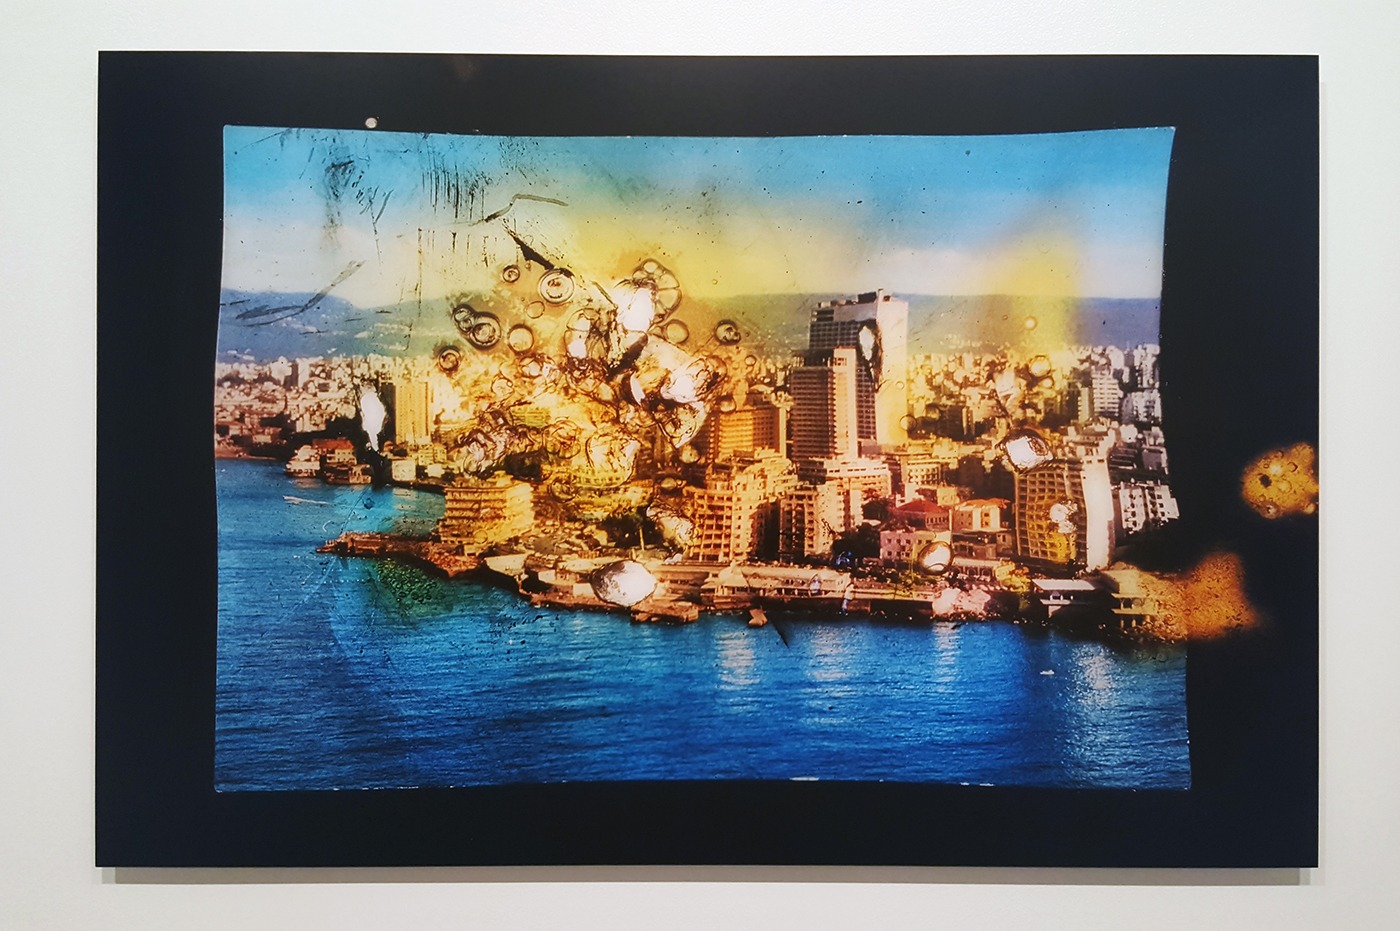 Histoire d'un photographe pyromane, Wonder Beirut #12, 1998 - 2006